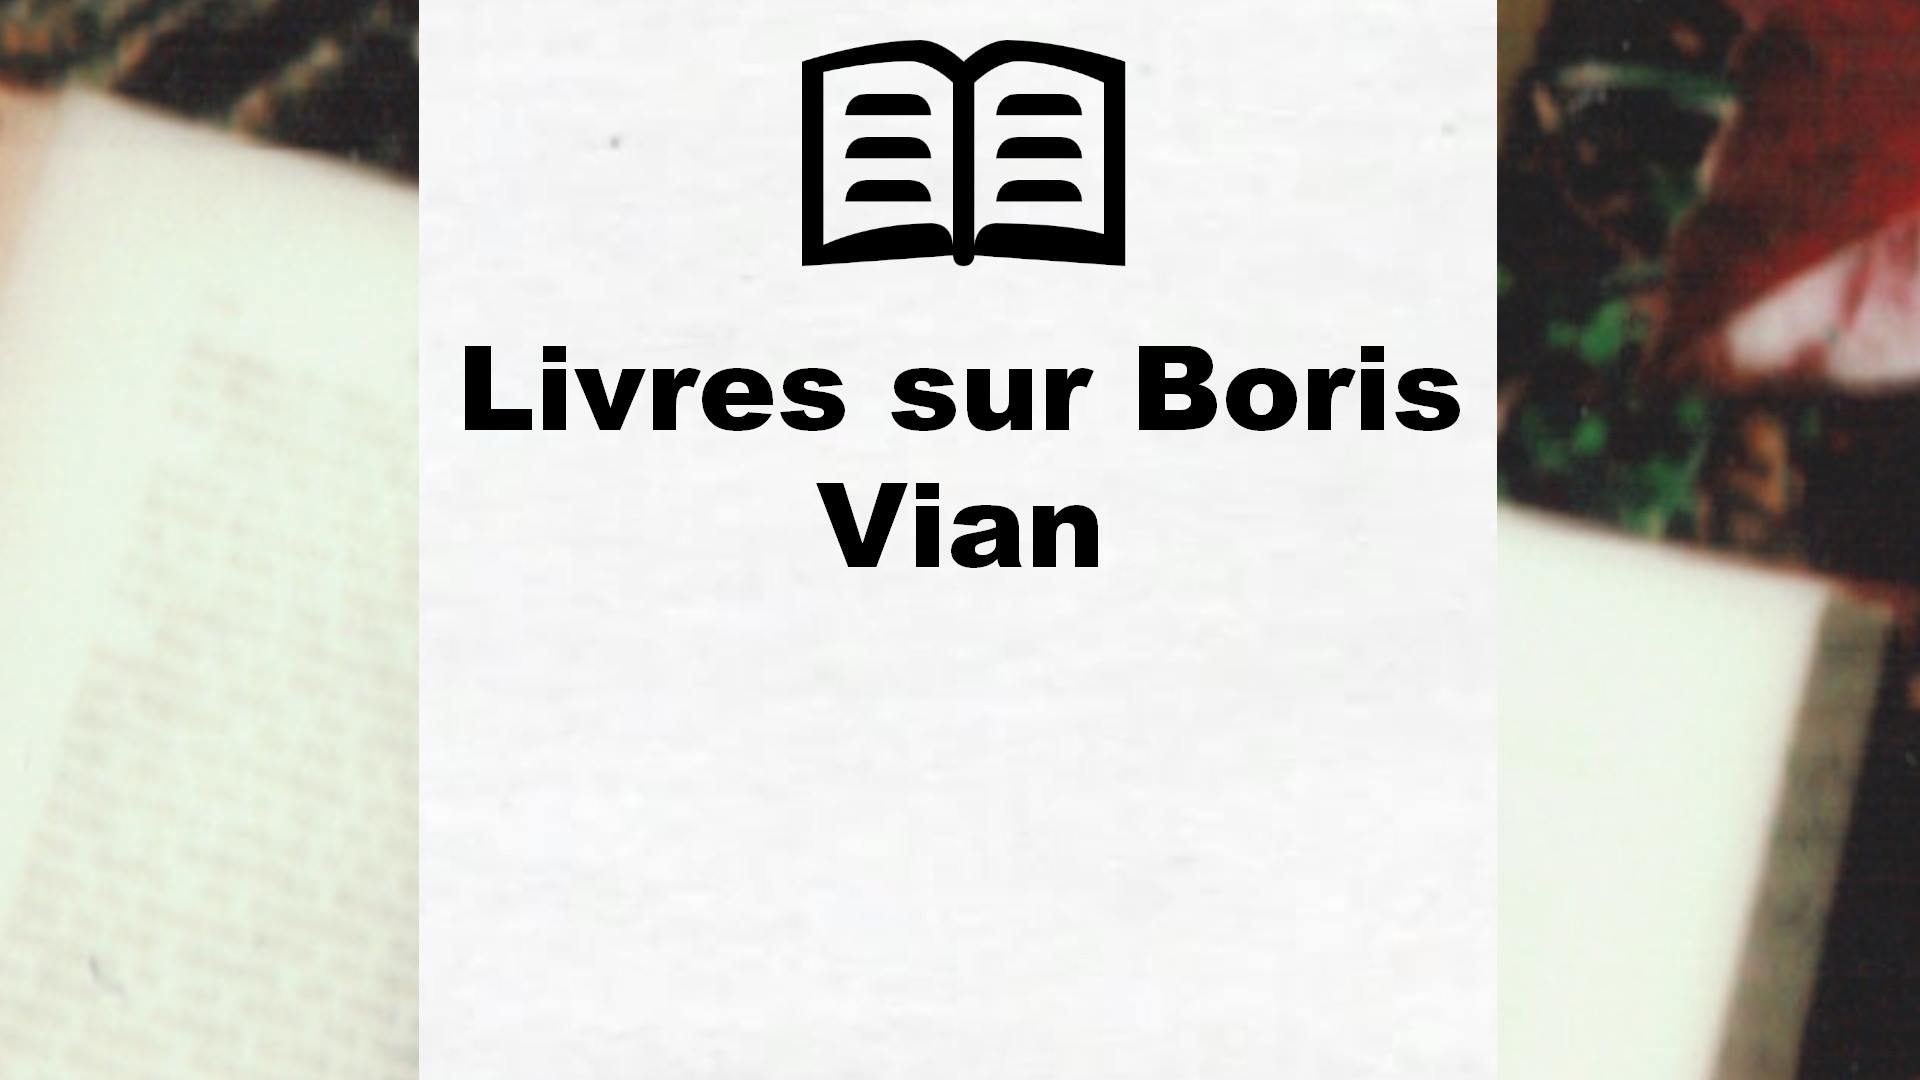 Livres sur Boris Vian